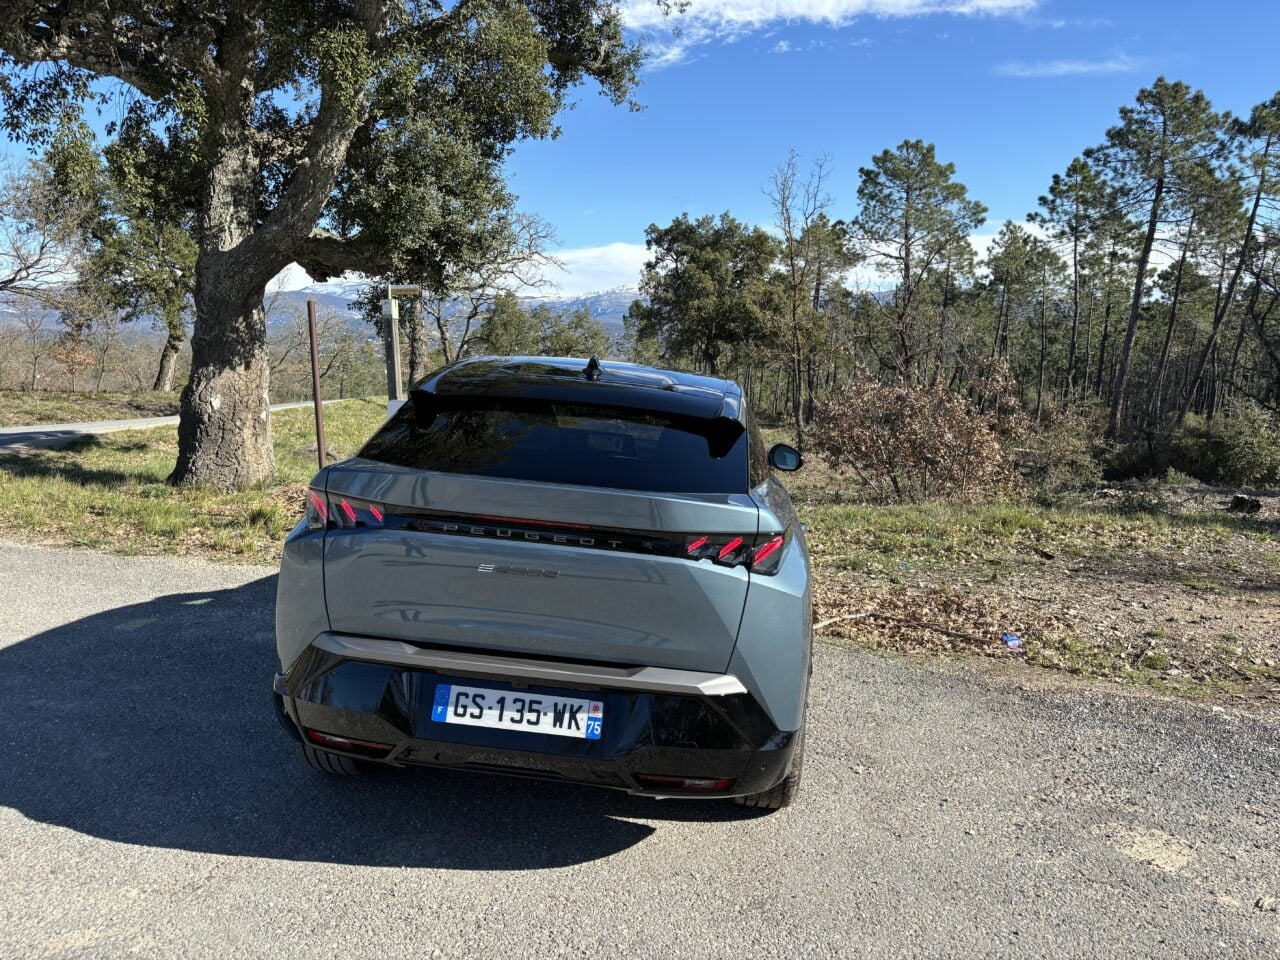 Szary samochód Peugeot zaparkowany przy drodze z drzewami i widokiem na góry w tle.